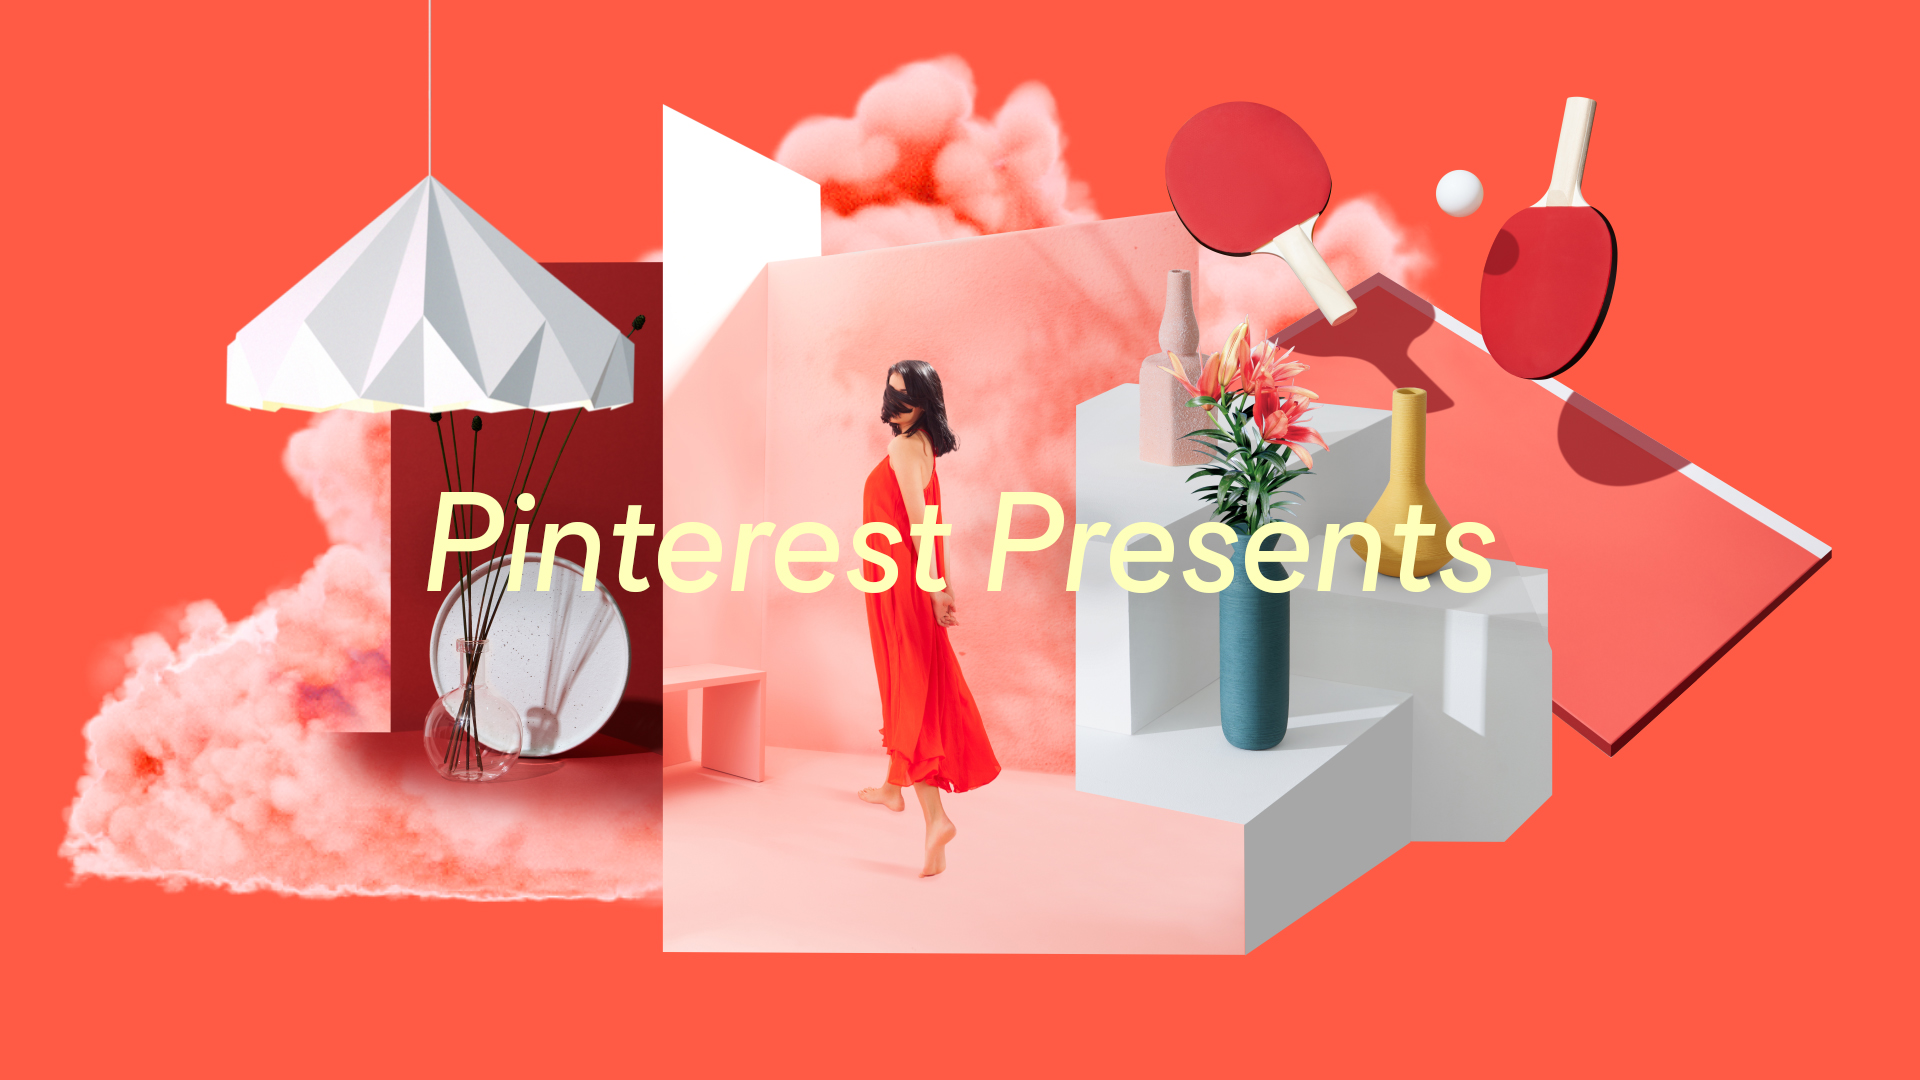 O Pinterest sediou o primeiro encontro de anunciantes “Pinterest Presents”  no Brasil